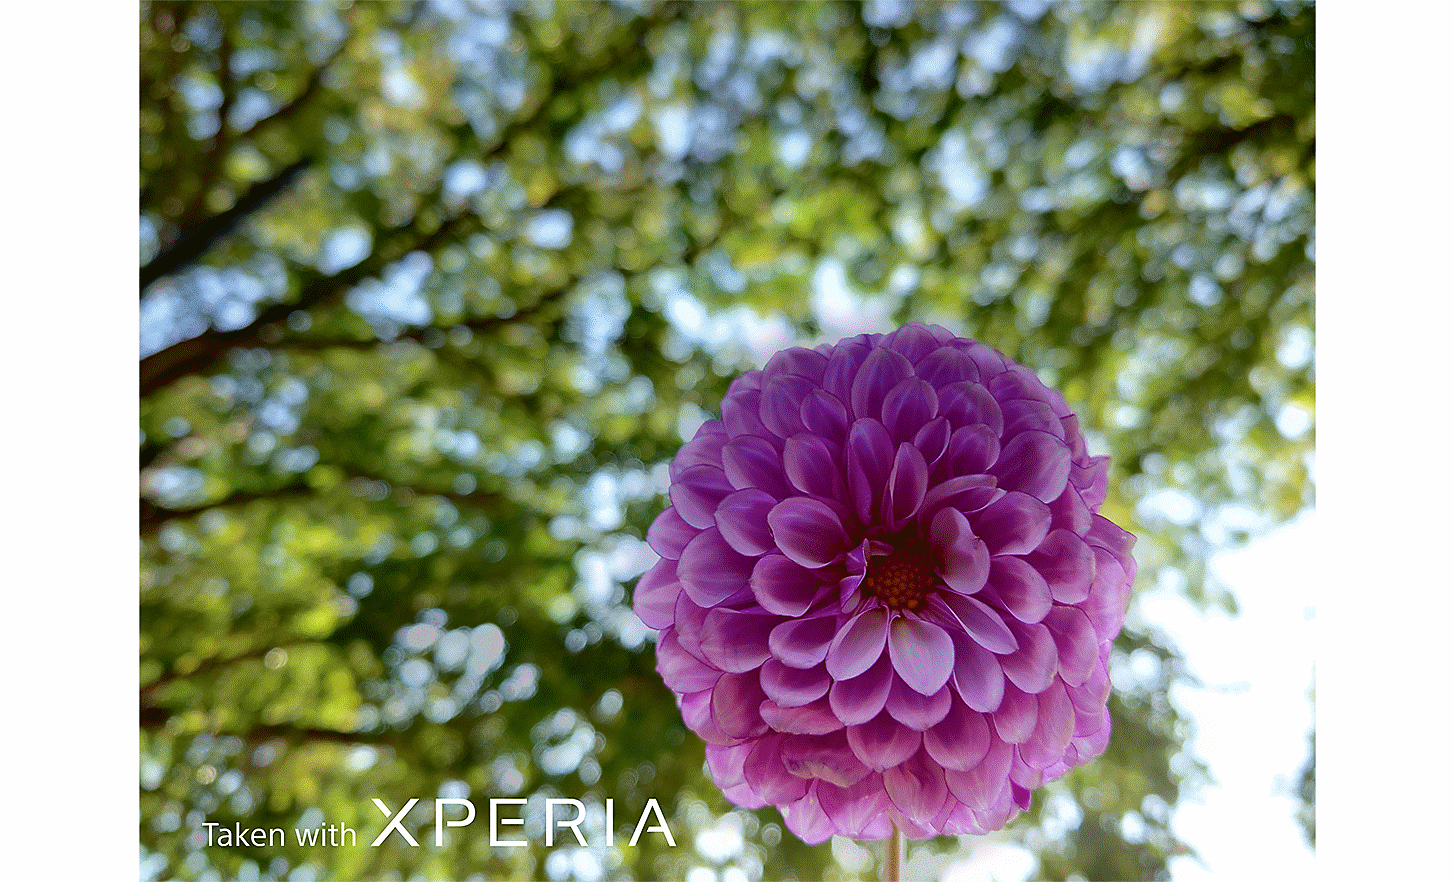 Ảnh cận cảnh một bông hoa màu hồng trên nền cây cối rợp lá. Trên ảnh có dòng chữ "Taken with XPERIA" (Chụp bằng XPERIA).